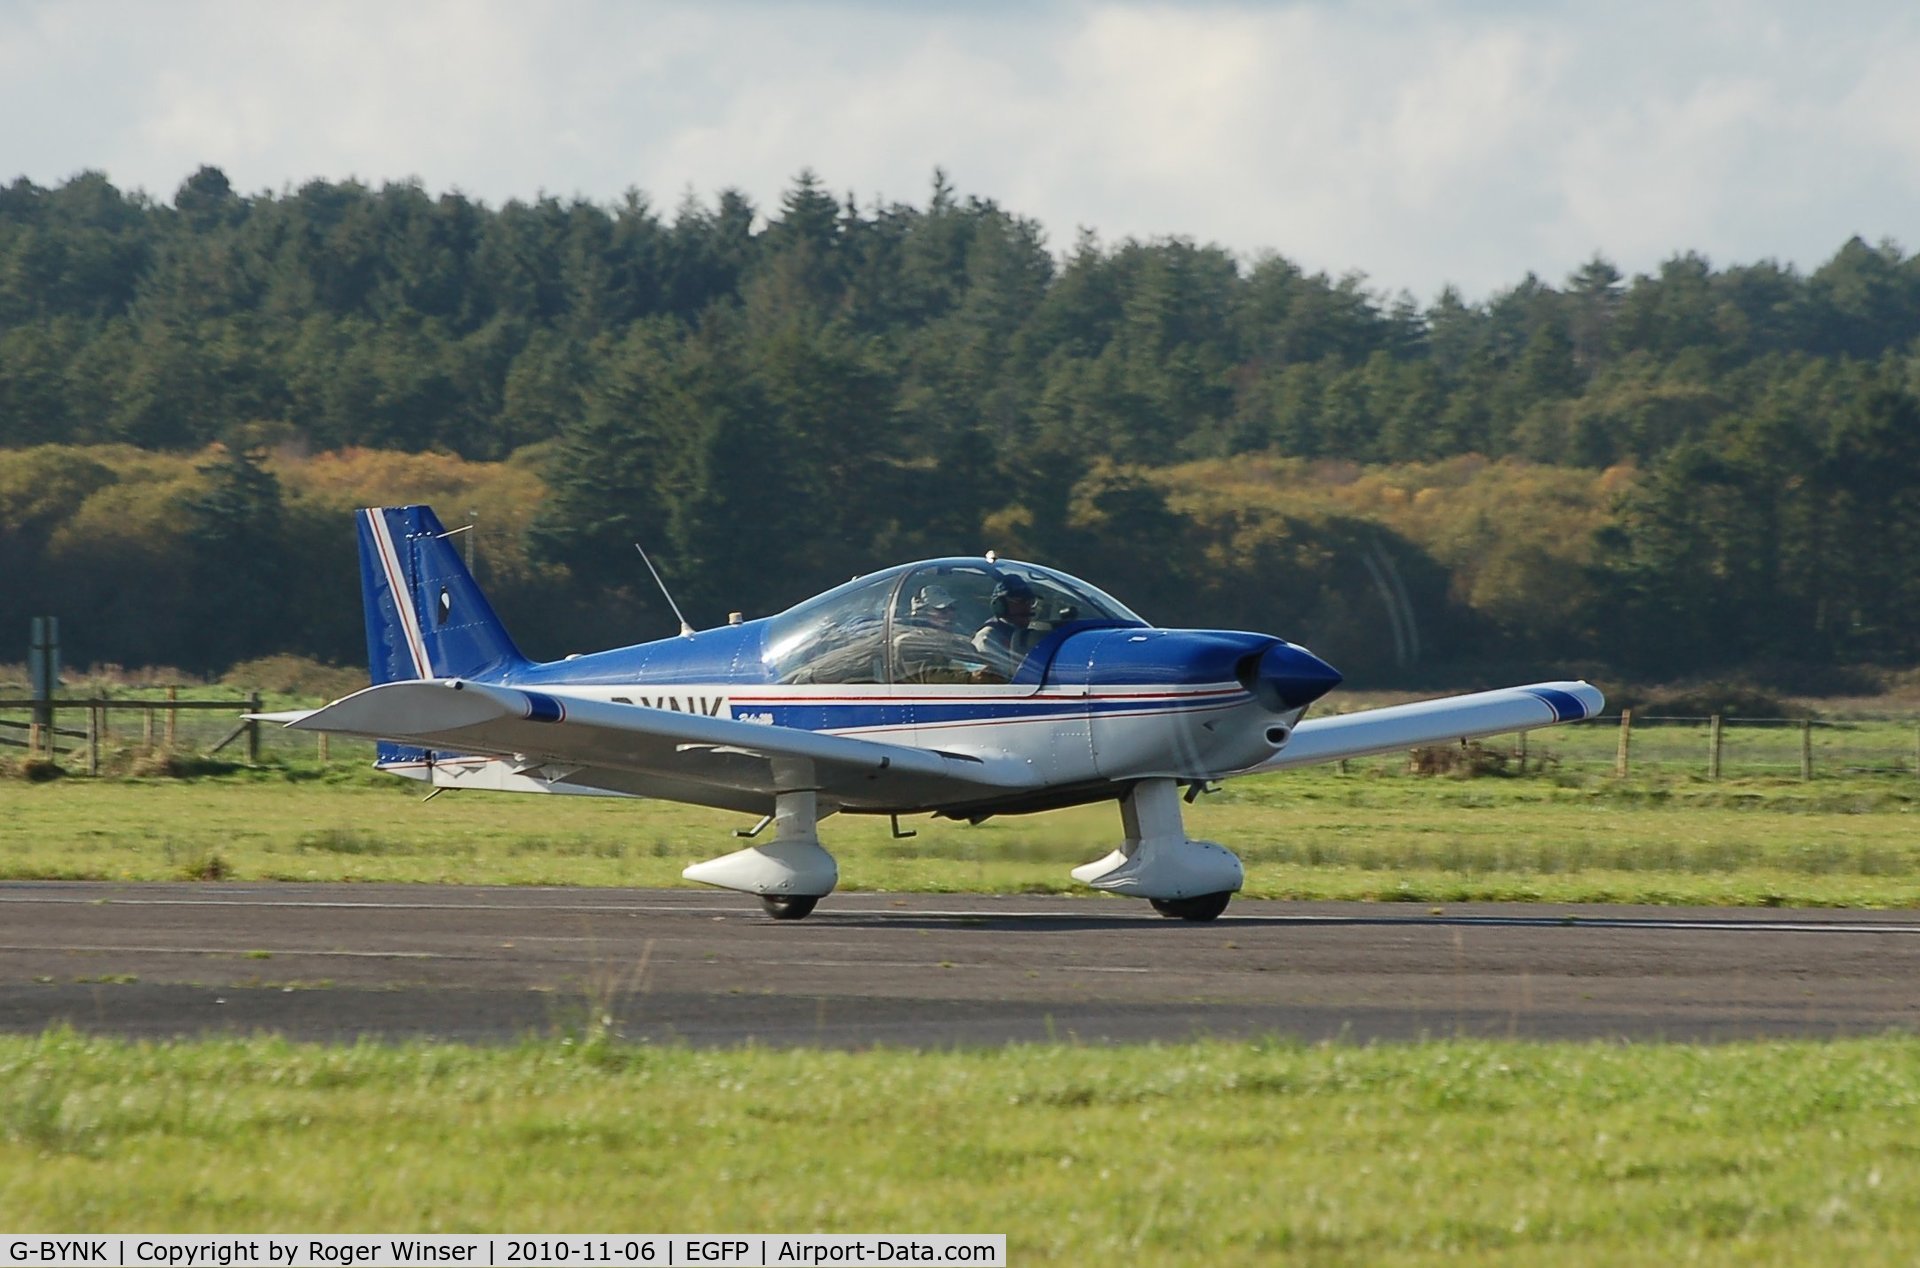 G-BYNK, 1999 Robin HR-200-160 C/N 338, Departing Runway 04